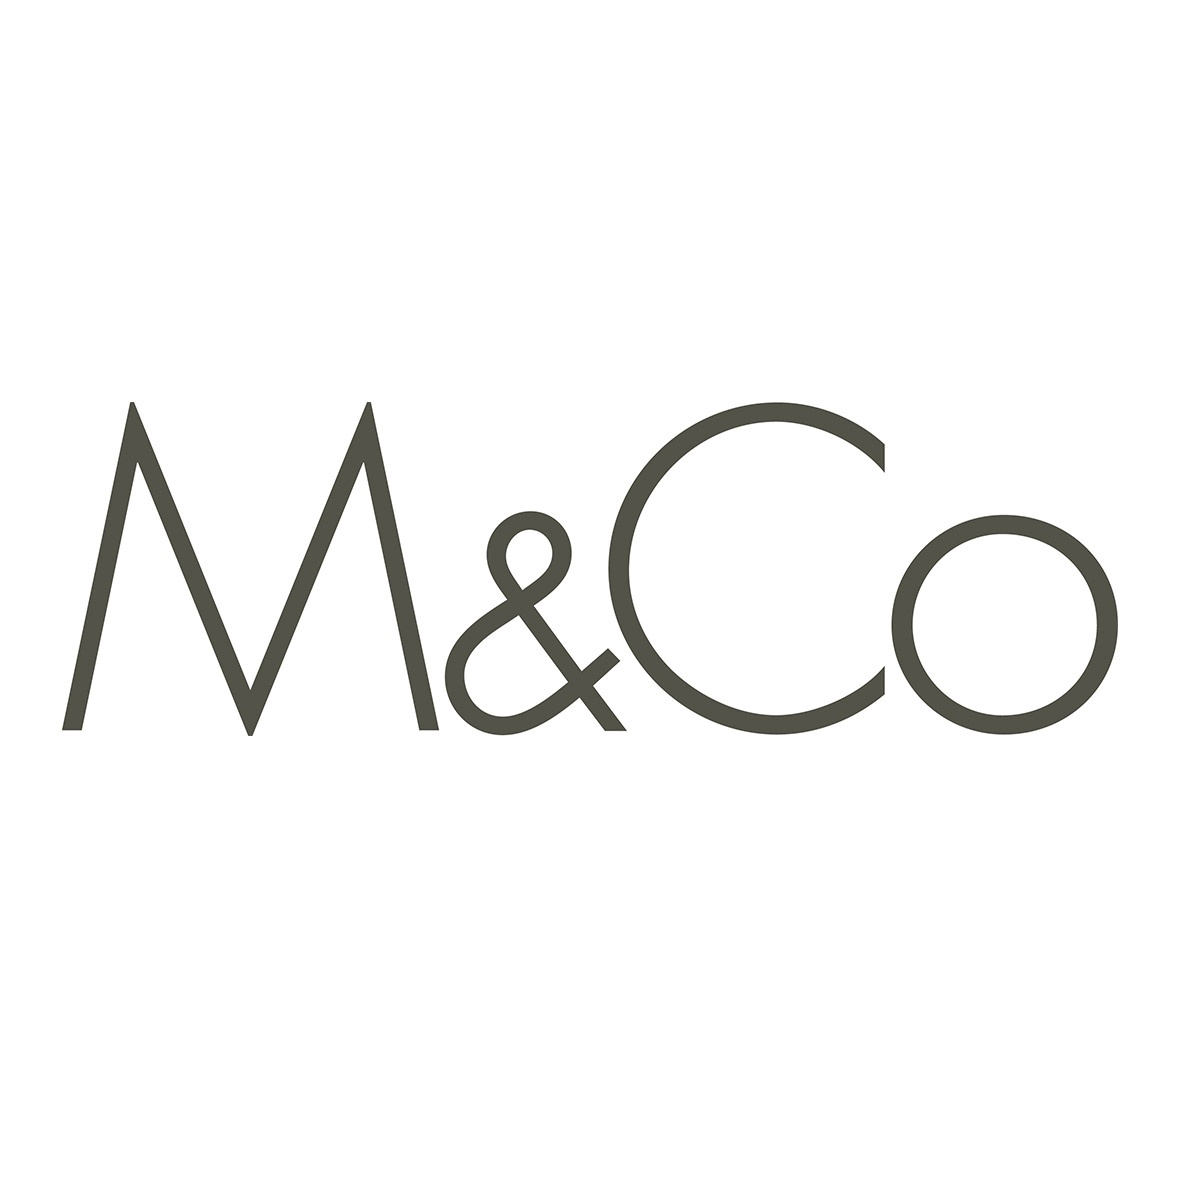 M&Co